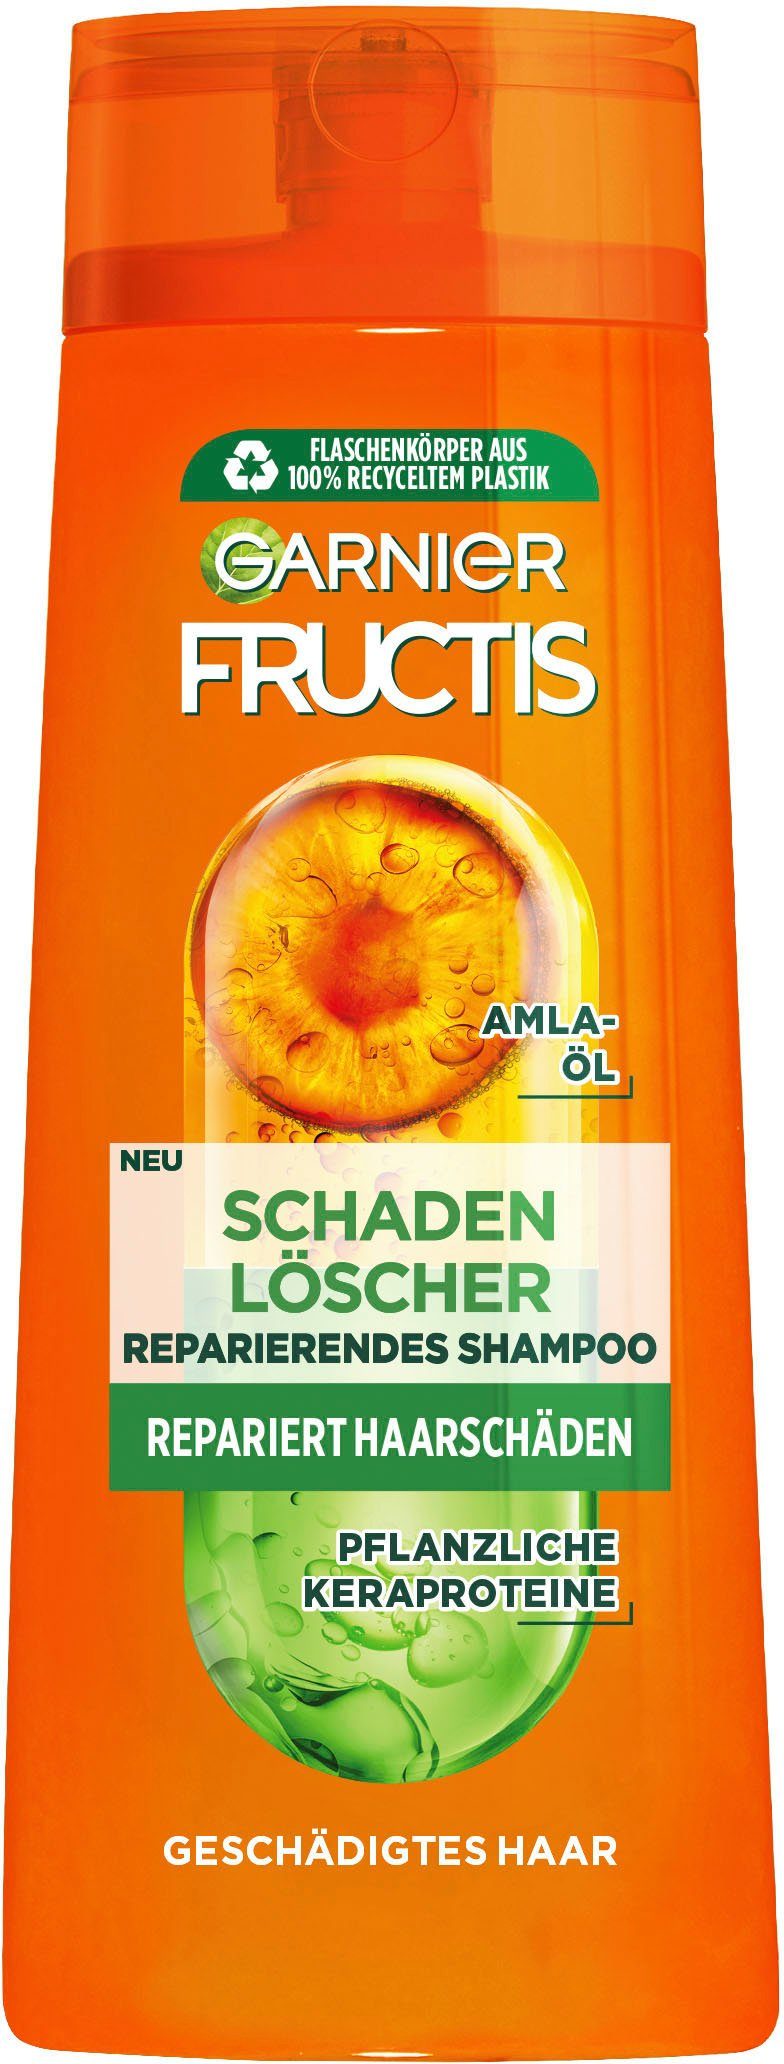 Shampoo, 6-tlg. GARNIER Schadenlöscher Garnier Haarshampoo Set, Fructis